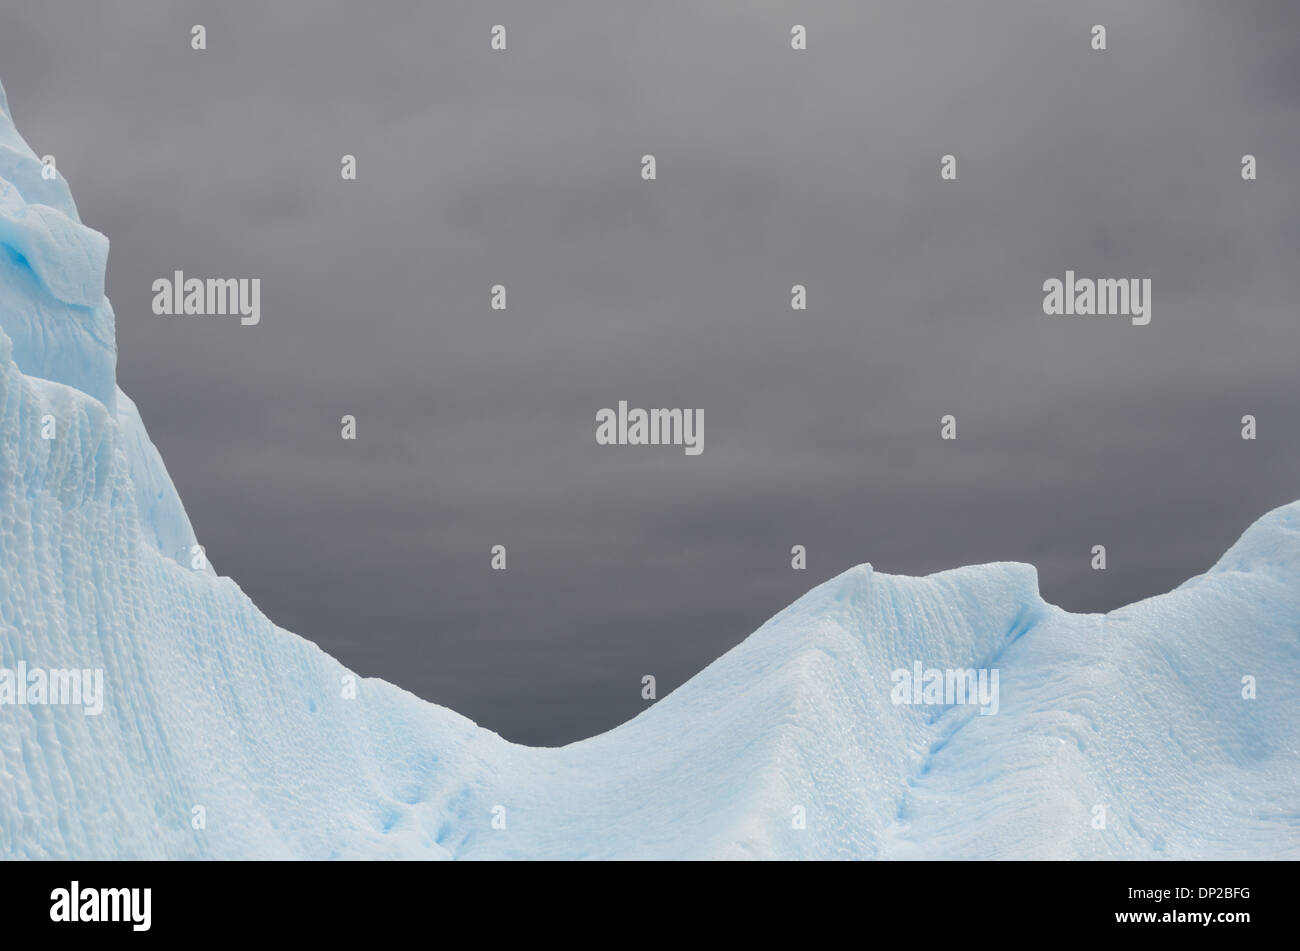 Antartide - forme intricate intagliato in un iceberg Antartico vicino a galleggiante due Hummock Isola, l'Antartide. Foto Stock